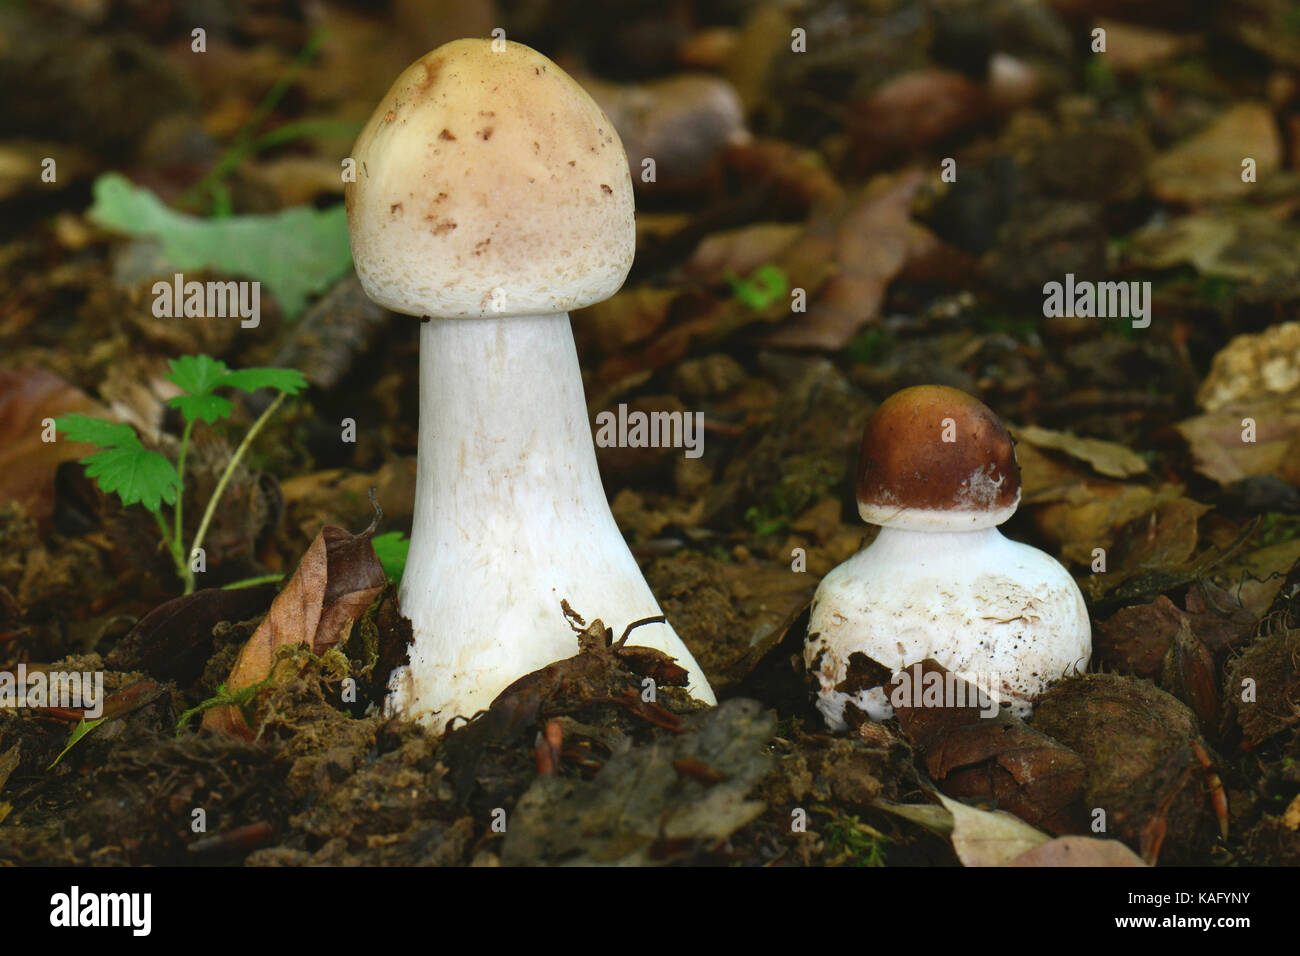 Sonnenschirm Pilz (Macrolepiota procera), zwei sehr junge fruchtkörper das Laub Schicht entstanden sind Stockfoto